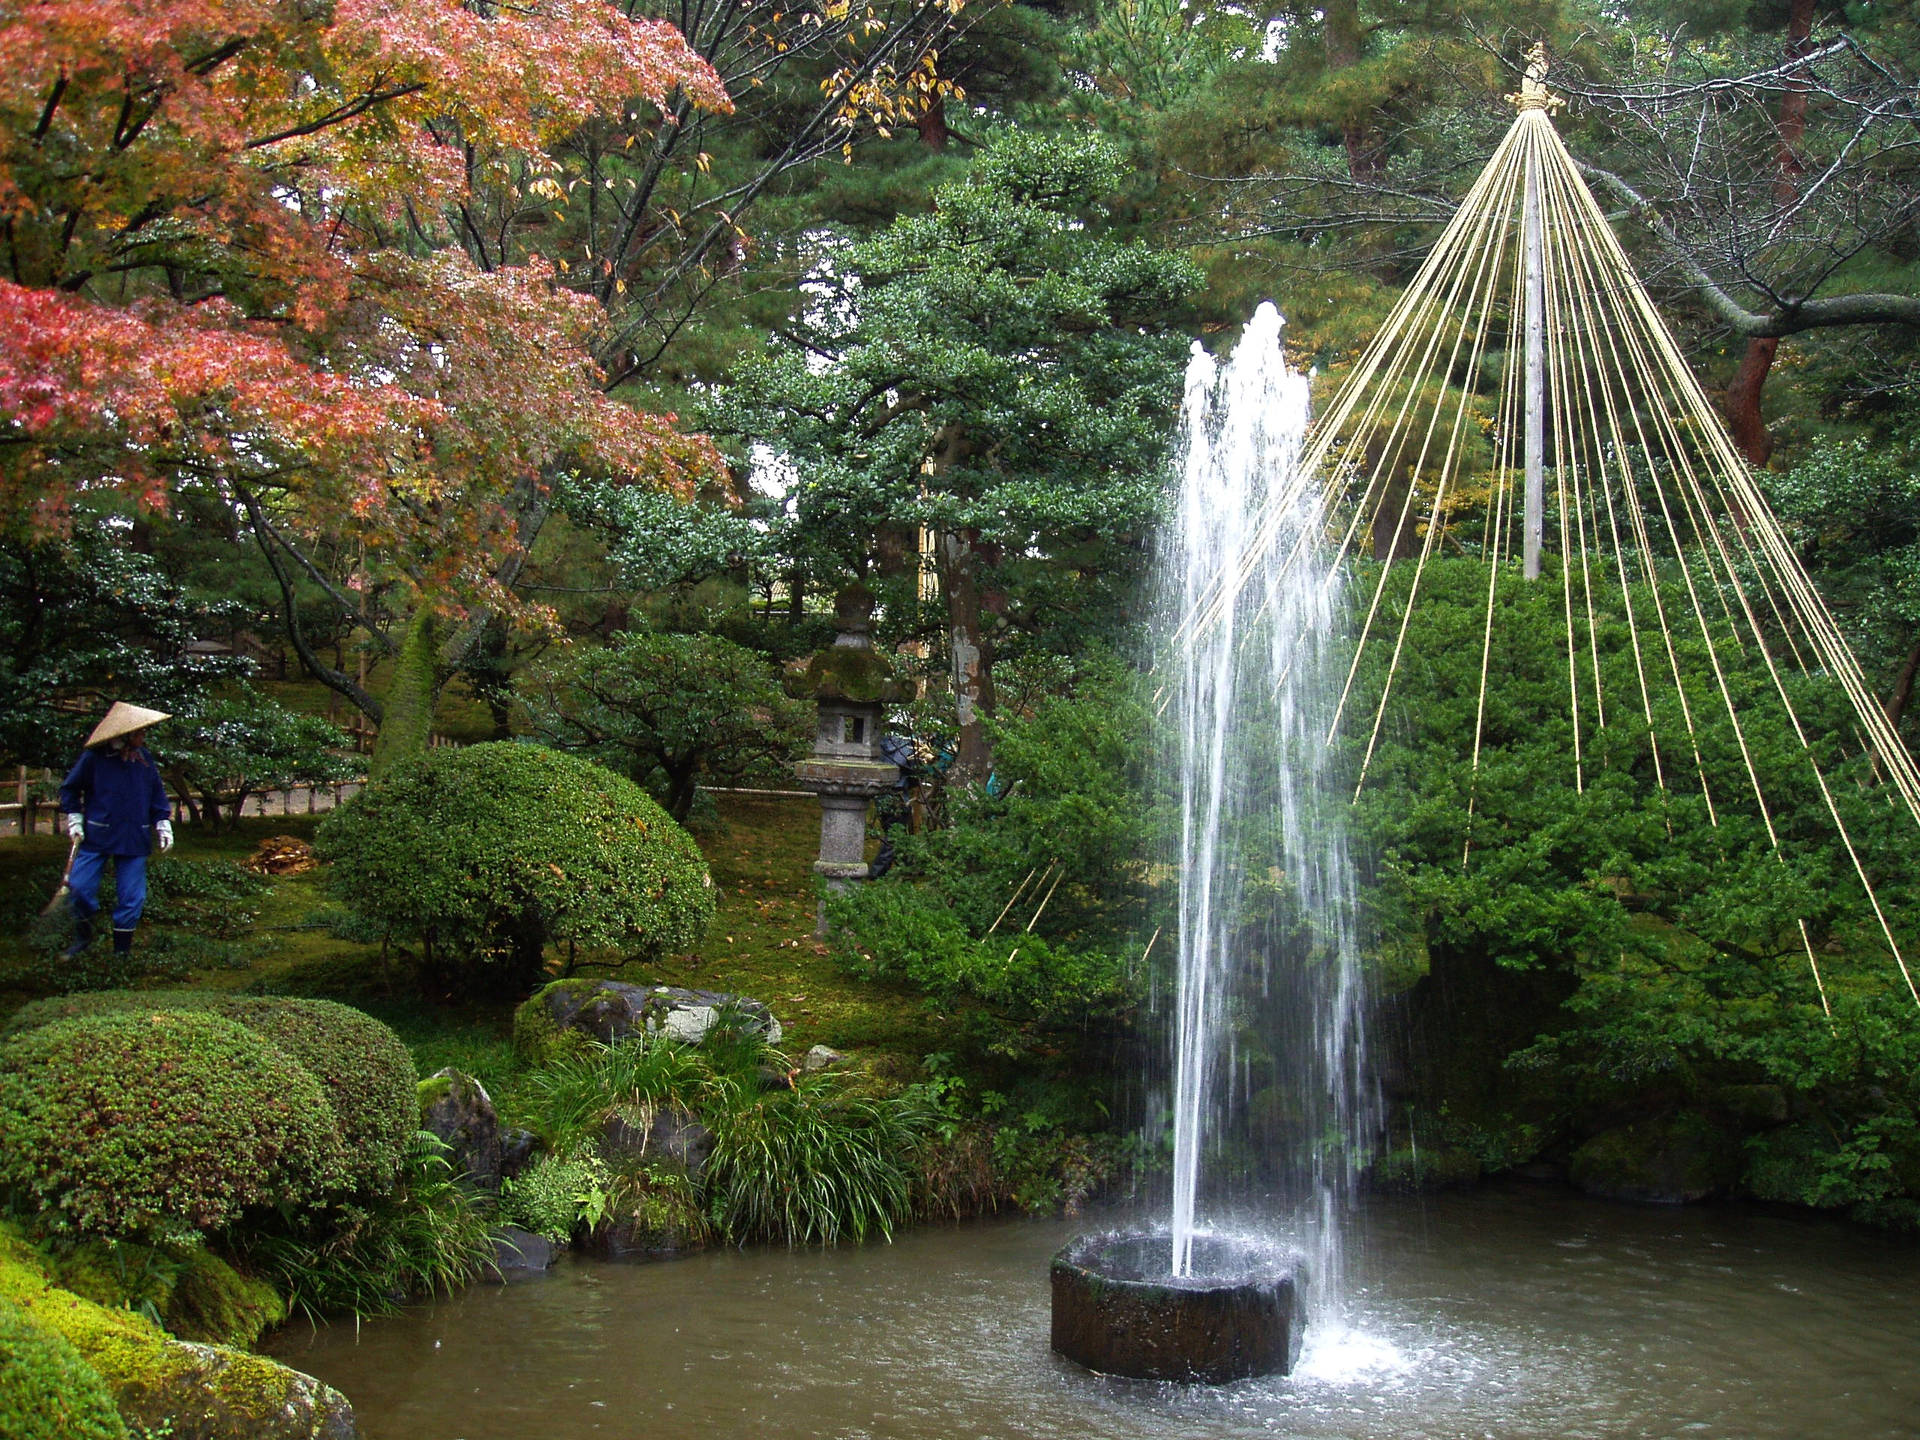 Japan's Kenrokuen Garden